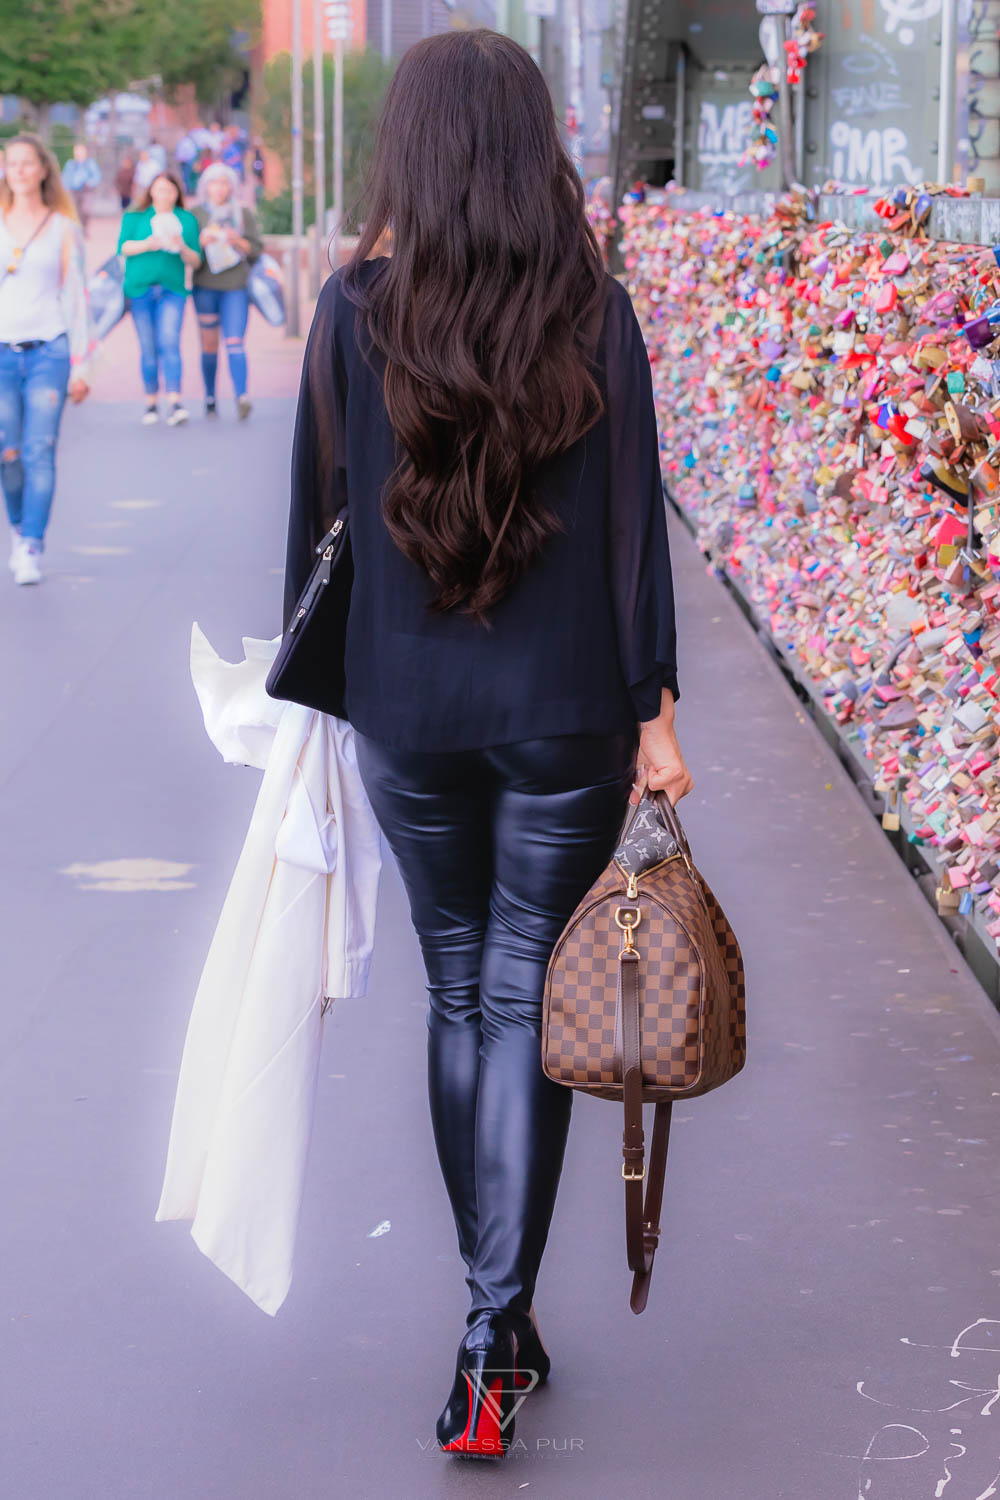 Vanessa Pur in Lederhose - Beste Lederhosen Outfits und beste Lederhose für den Alltag. Welche Lederhose für welche Jahreszeit? Wie kombiniere ich Lederhosen am besten